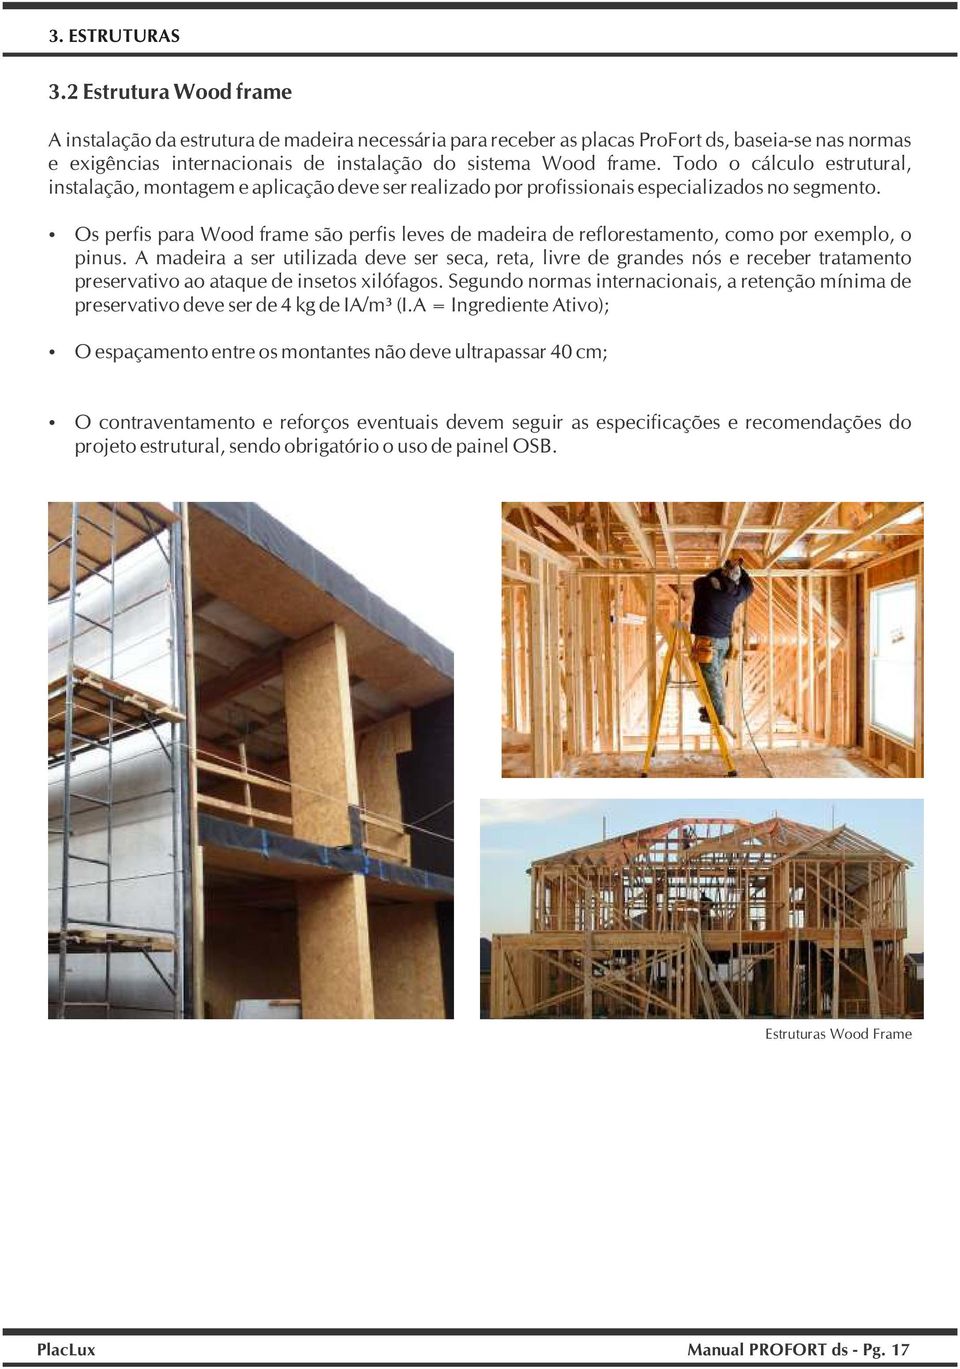 Todo o cálculo estrutural, instalação, montagem e aplicação deve ser realizado por profissionais especializados no segmento.